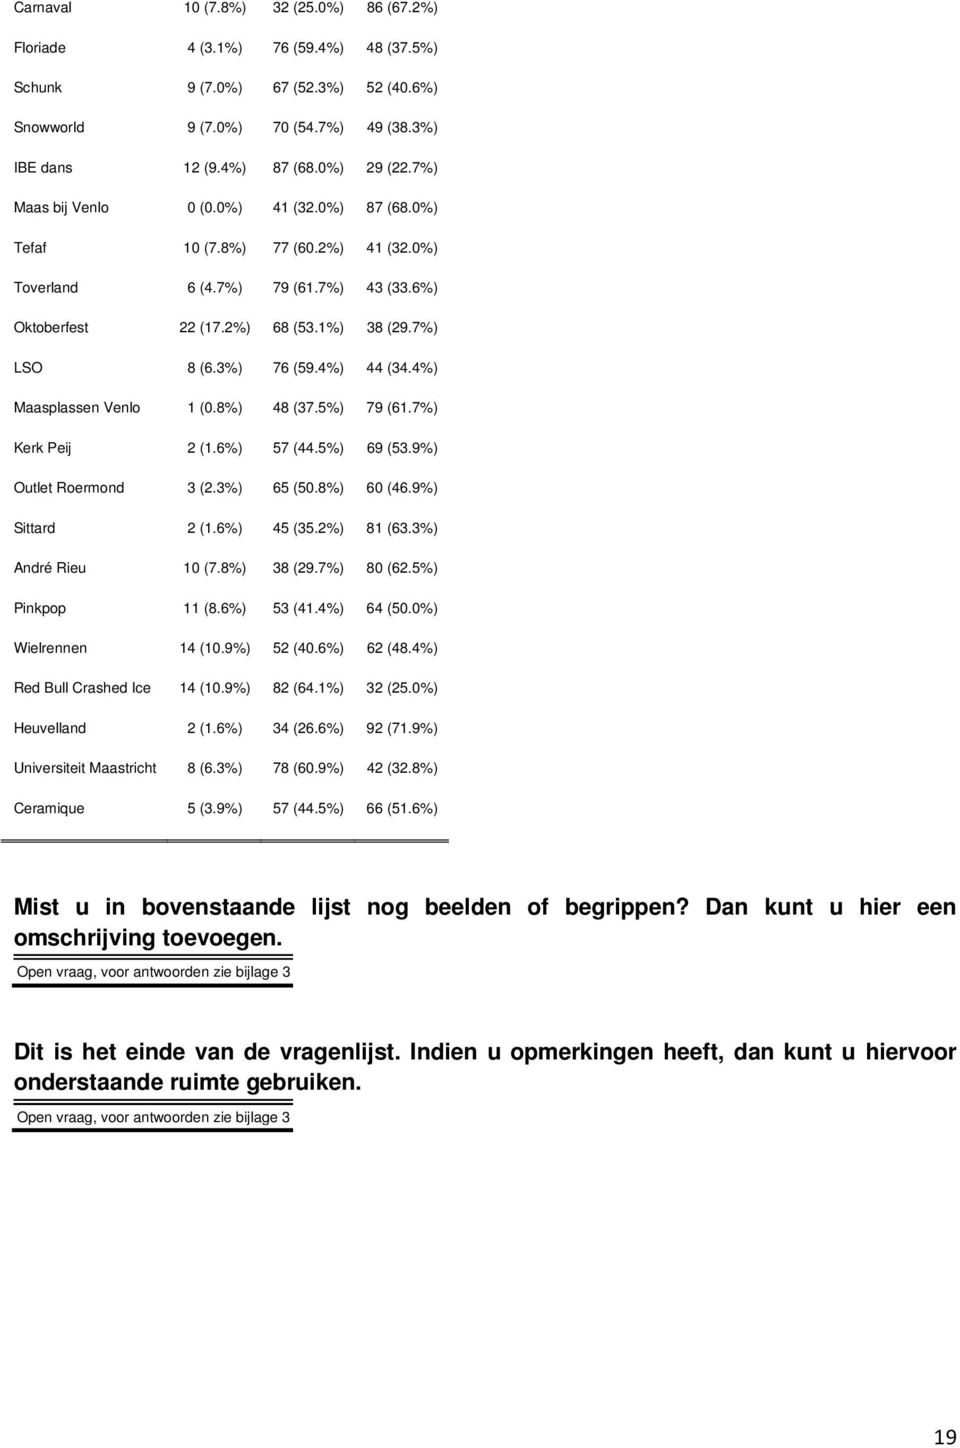 4%) 44 (34.4%) Maasplassen Venlo 1 (0.8%) 48 (37.5%) 79 (61.7%) Kerk Peij 2 (1.6%) 57 (44.5%) 69 (53.9%) Outlet Roermond 3 (2.3%) 65 (50.8%) 60 (46.9%) Sittard 2 (1.6%) 45 (35.2%) 81 (63.